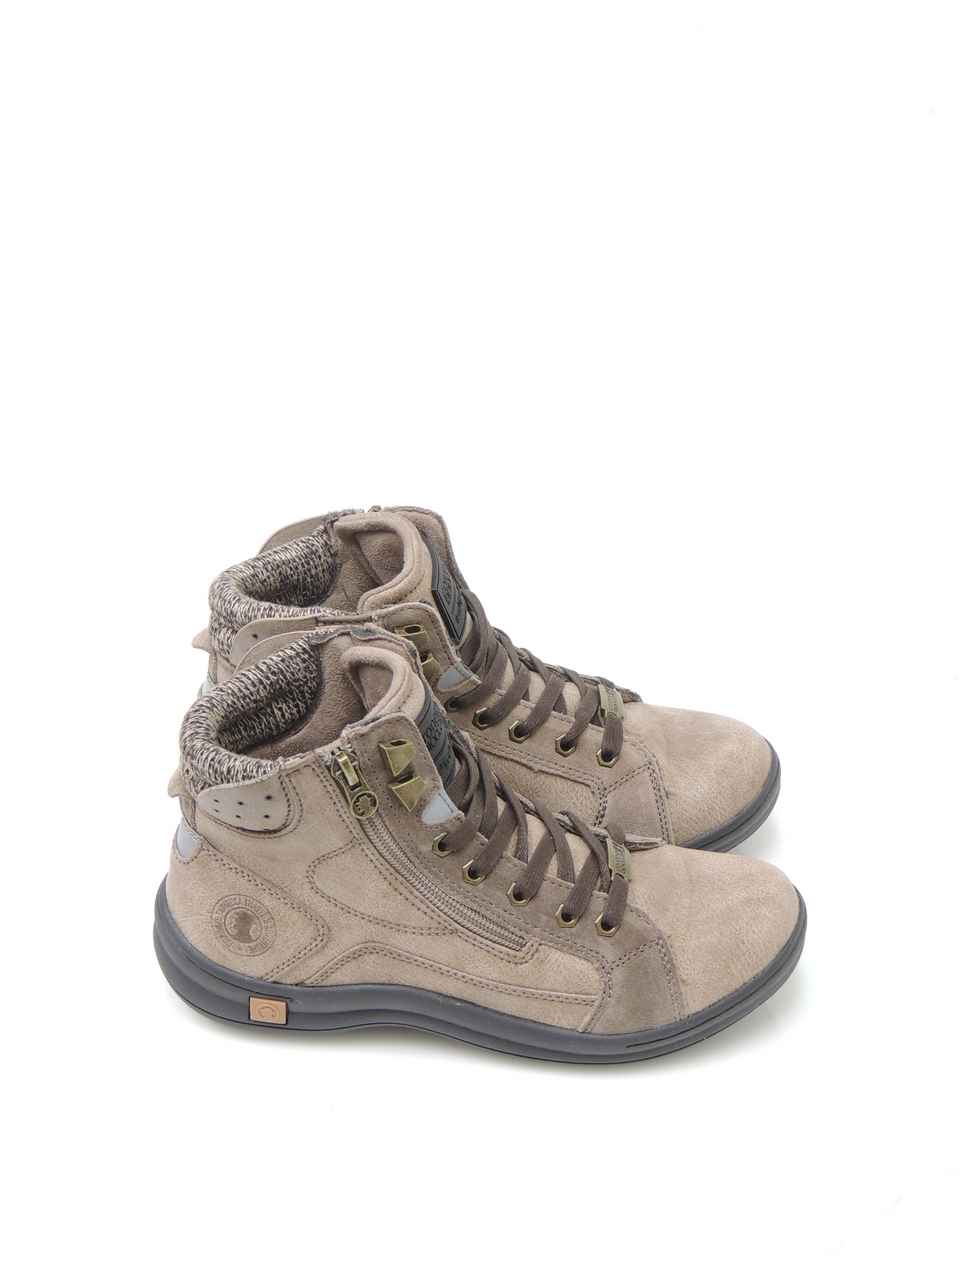 sneakers--coronel tapiocca-c1098-7-polipiel-beige